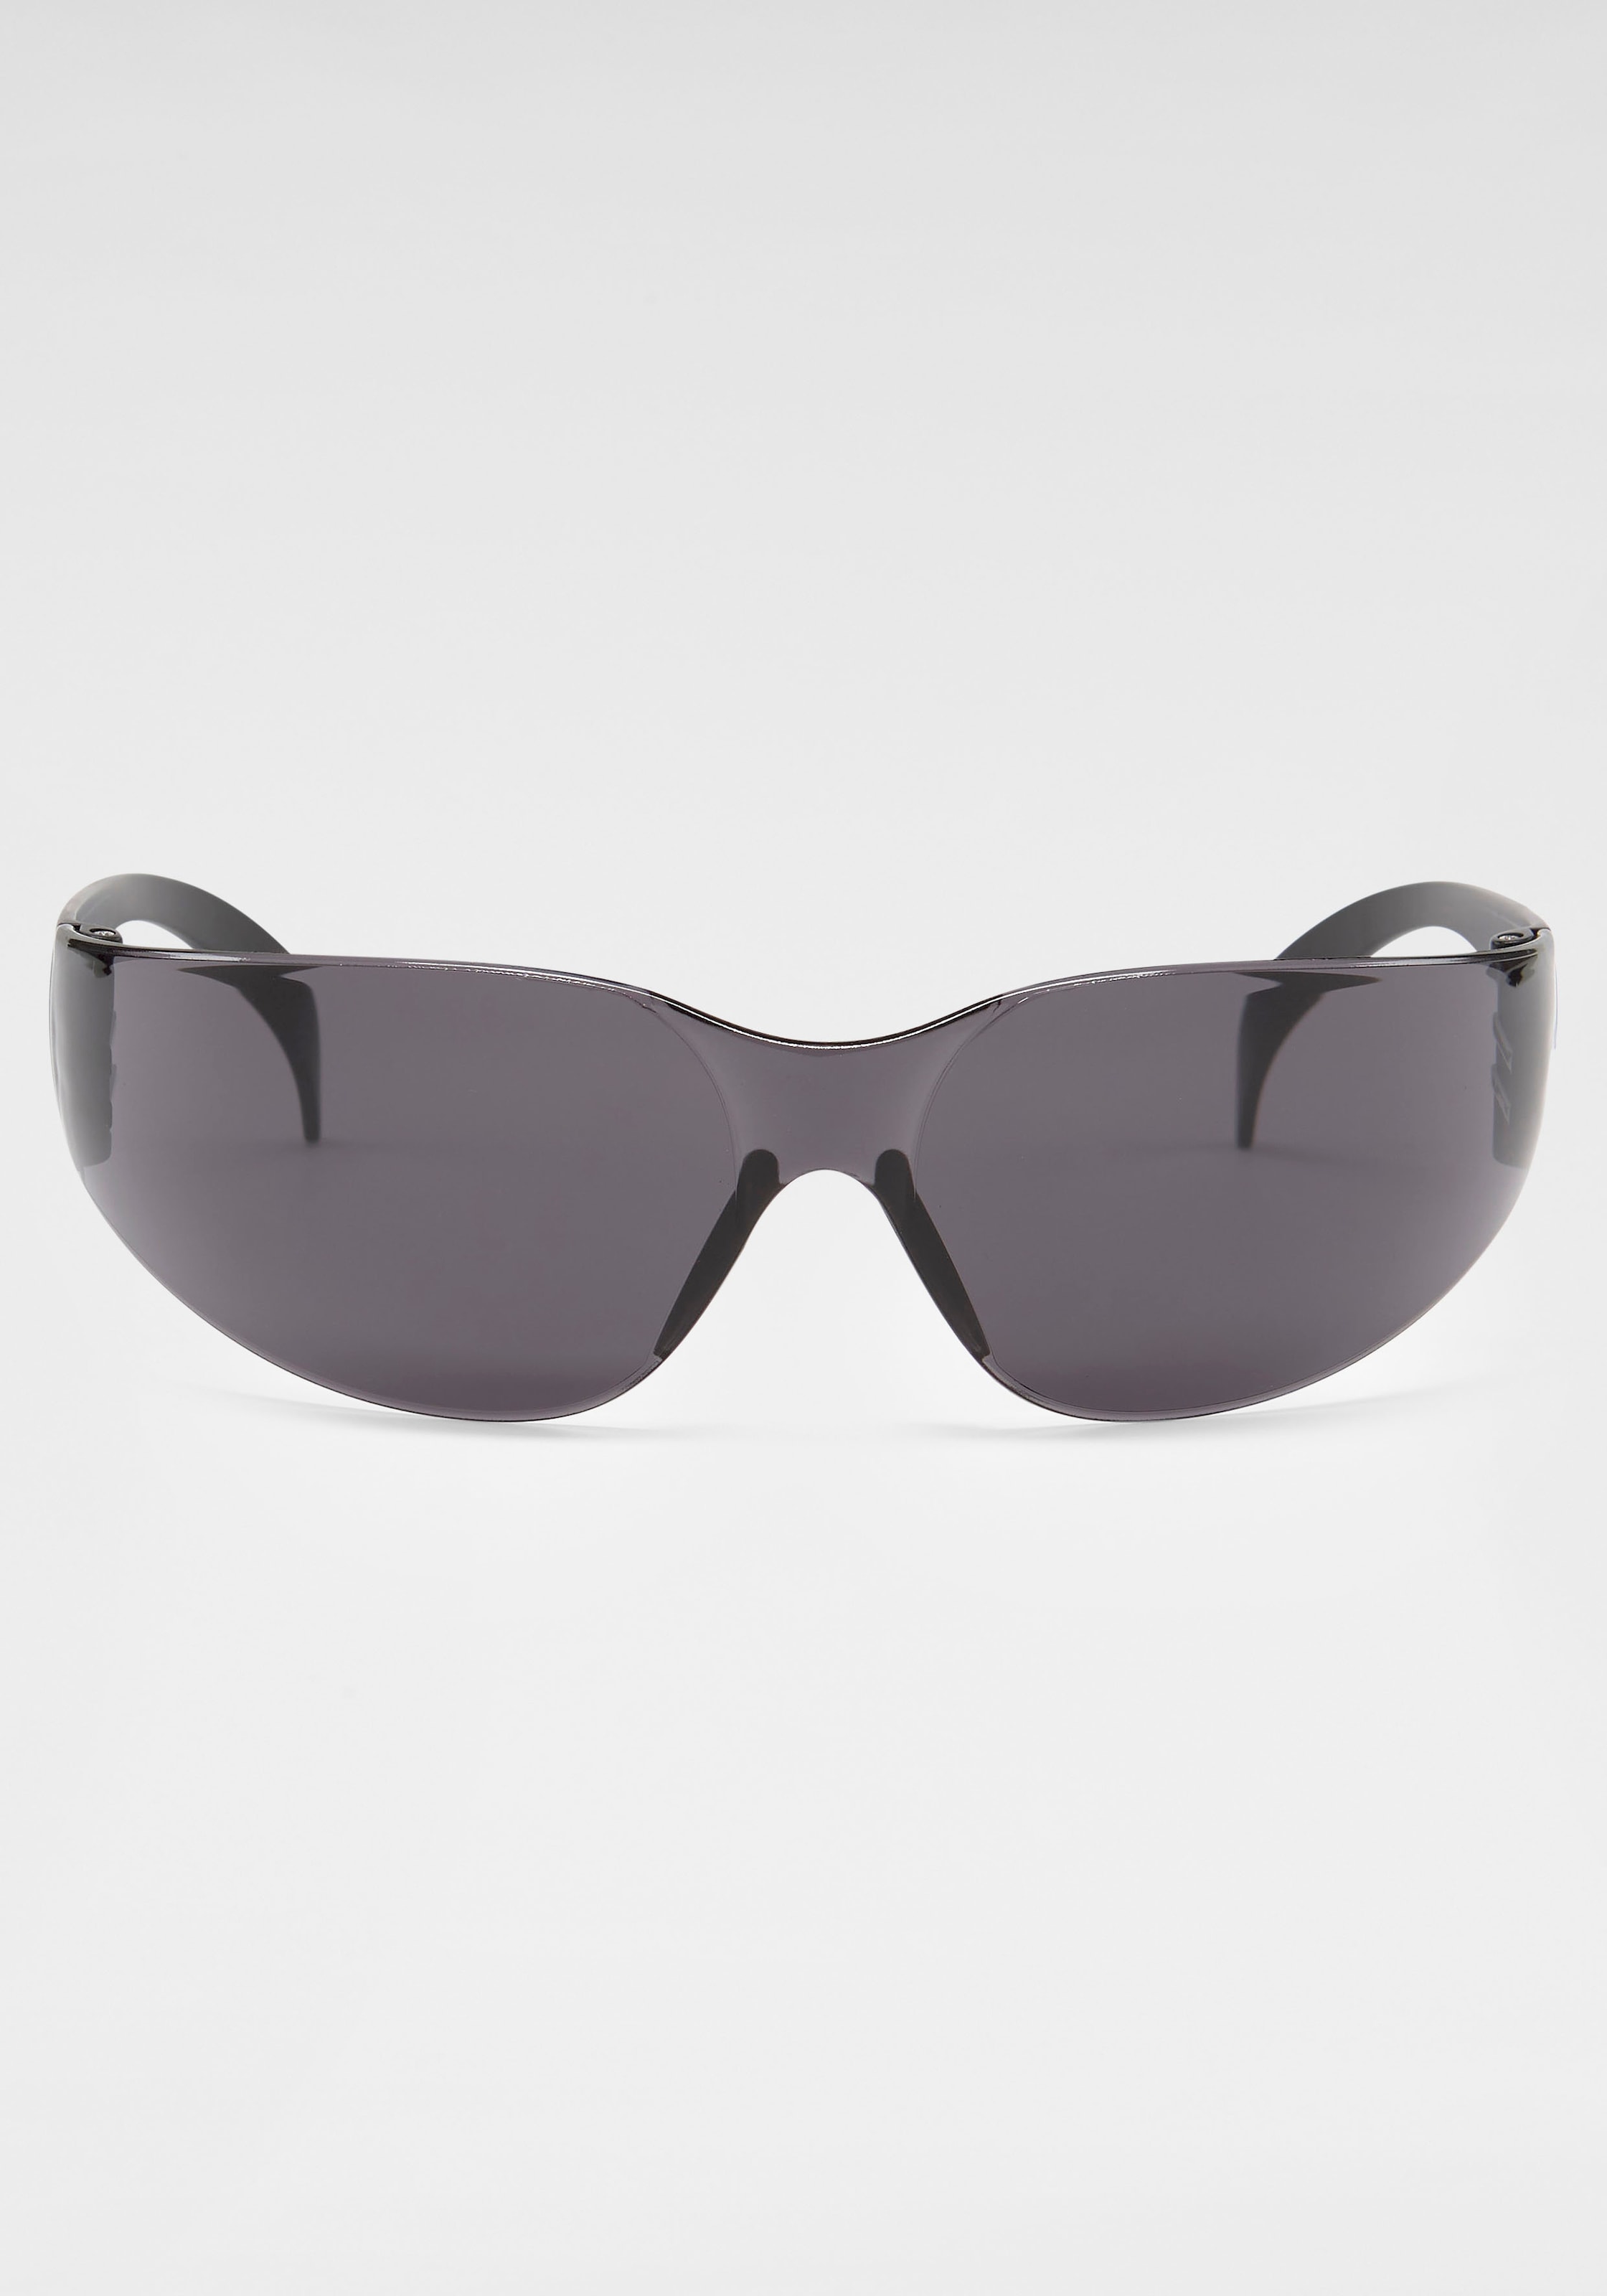 mit kaufen Gläsern Sonnenbrille, verspiegelten online Bench.